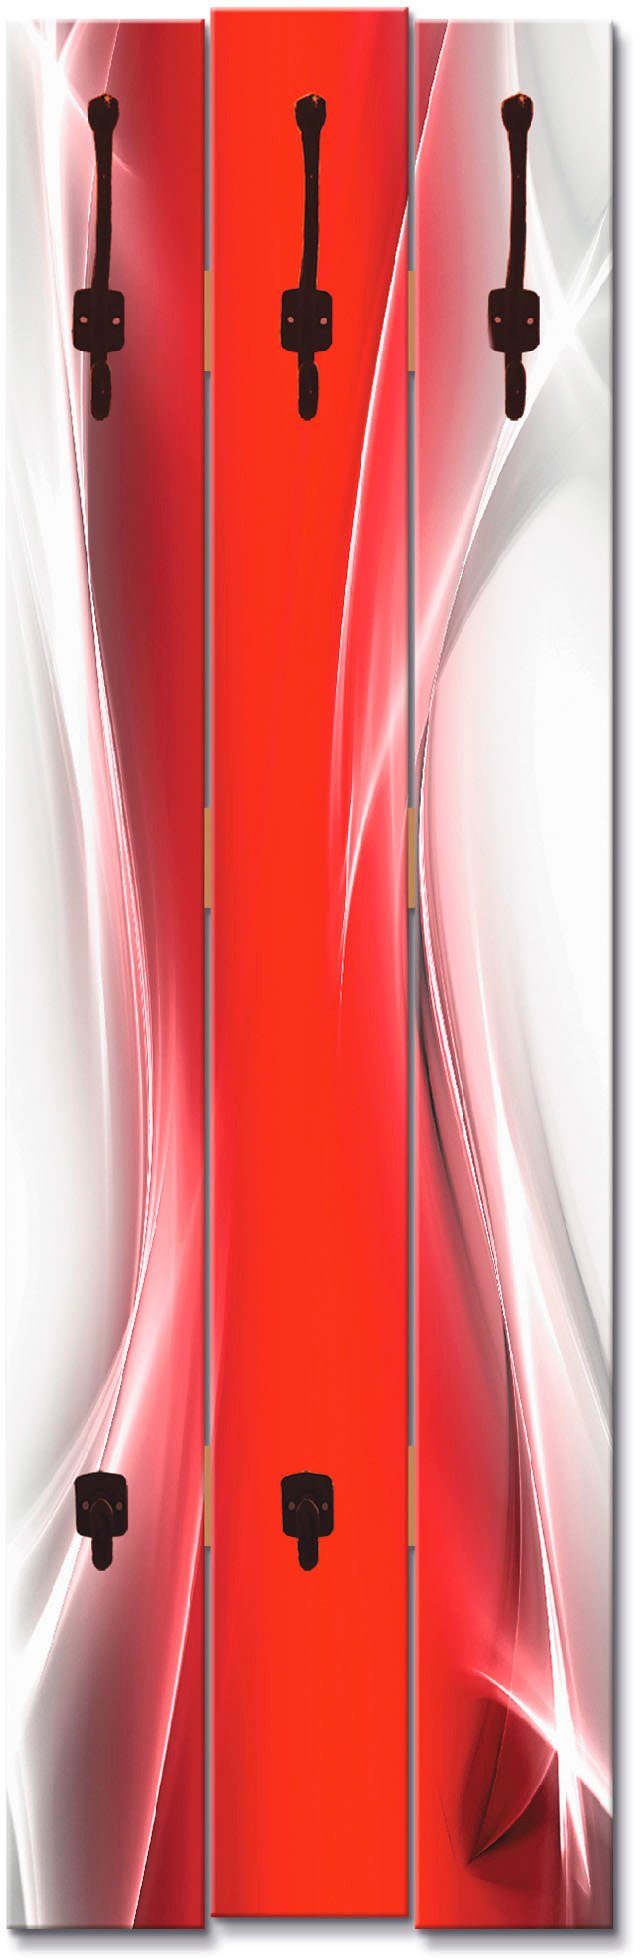 Artland Kapstokpaneel Creatief element rood voor uw artdesign ruimtebesparende kapstok van hout met 5 haken, geschikt voor kleine, smalle hal, halkapstok